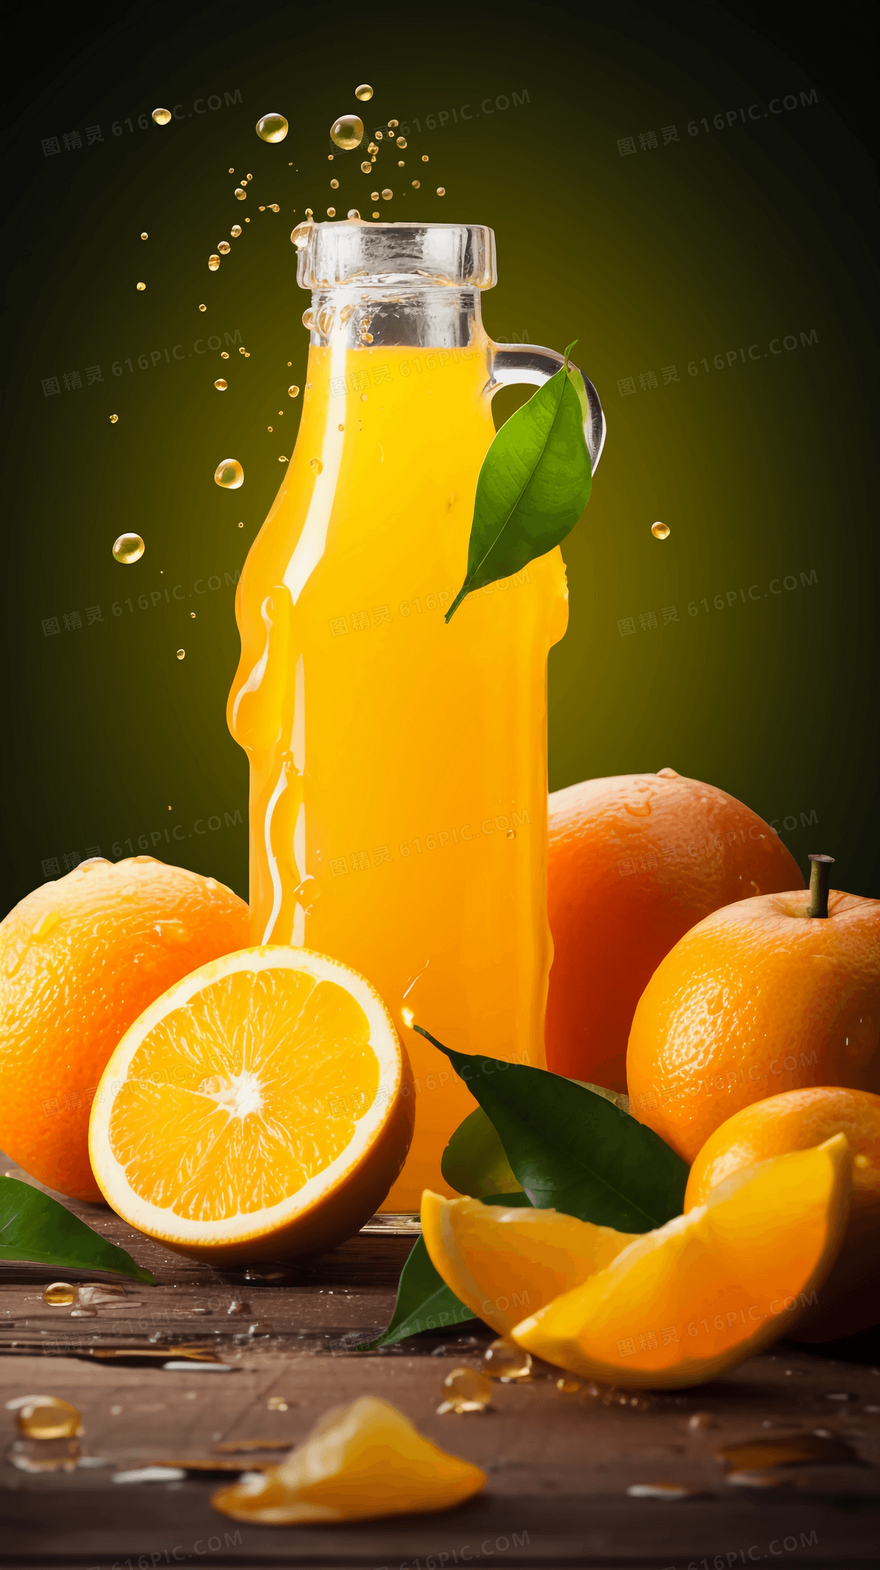 美味可口健康饮料鲜榨橙汁